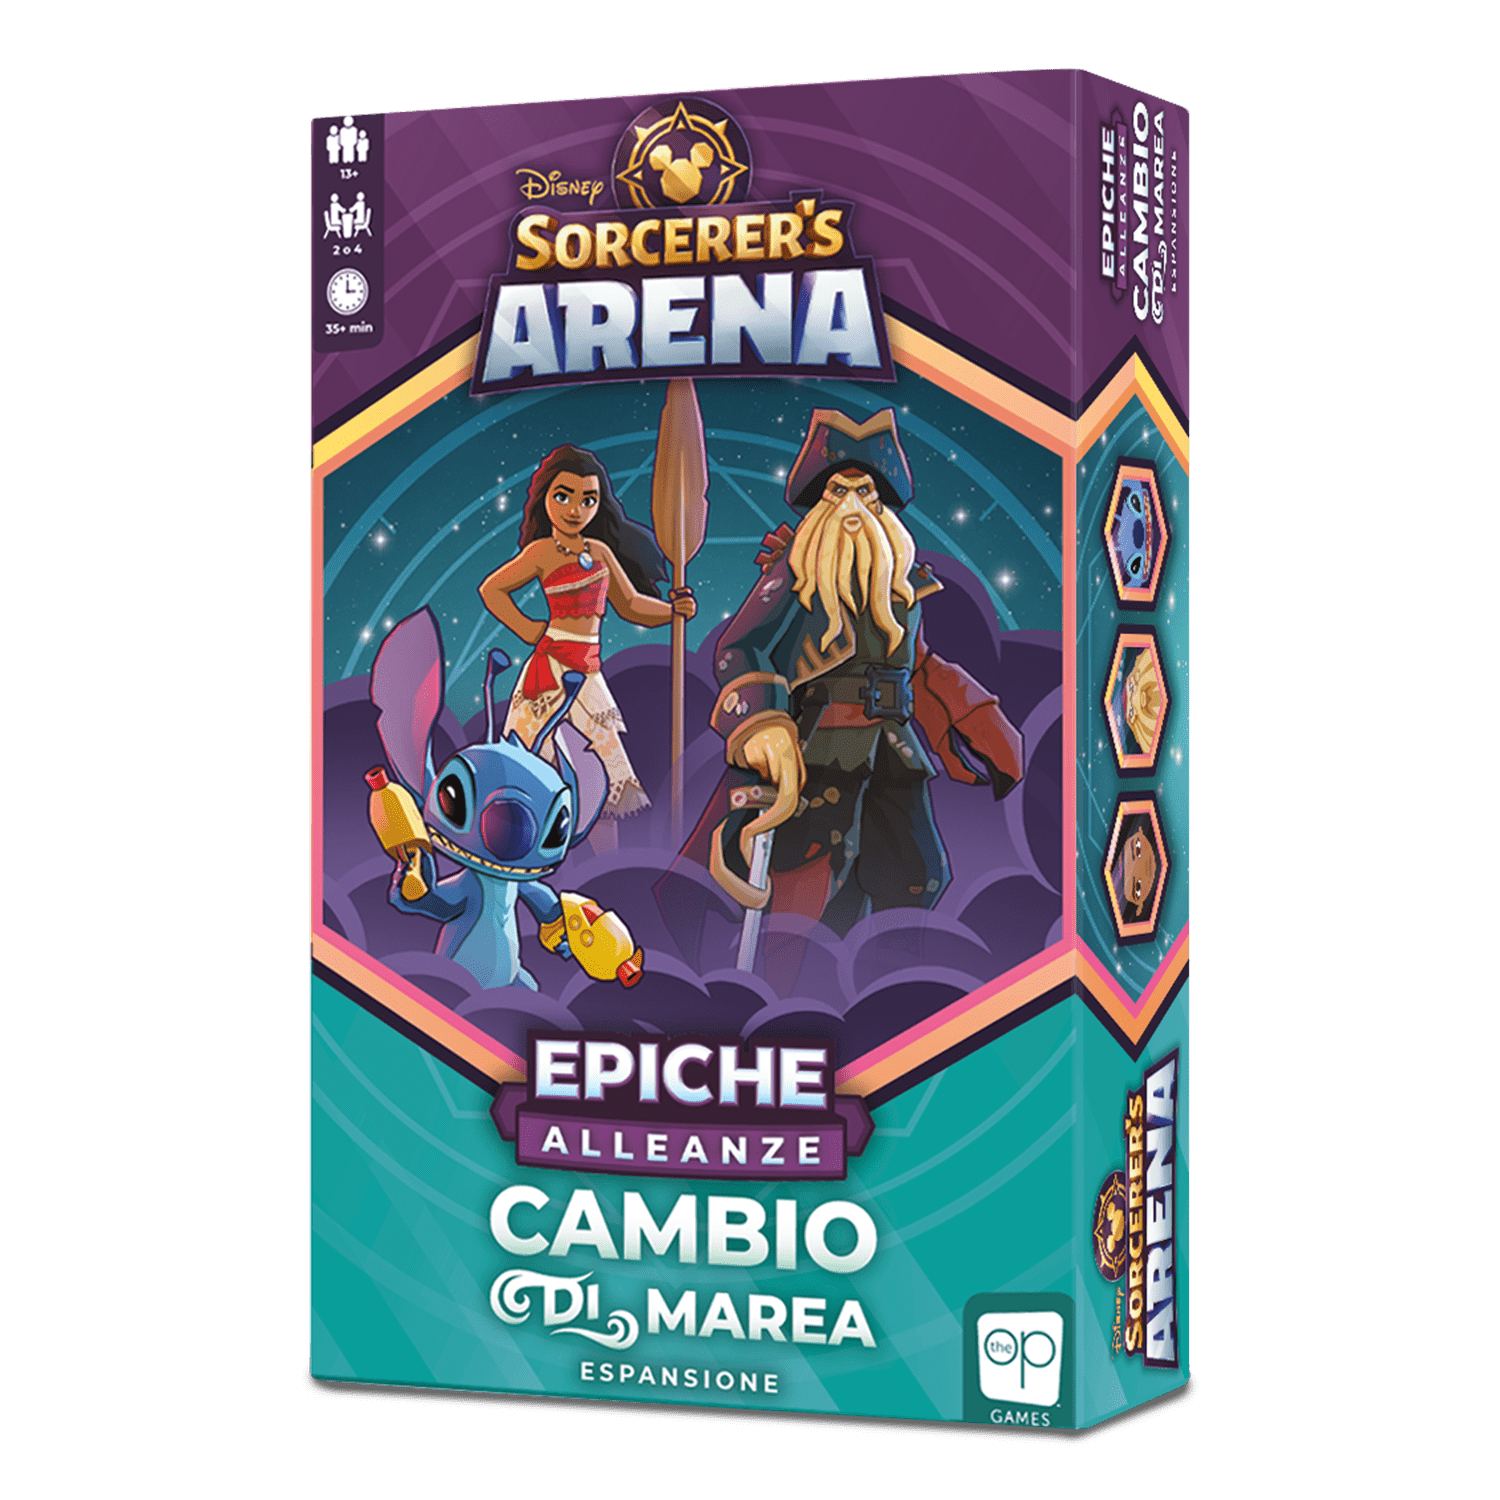 Disney Sorcerer's Arena - Brividi & Tremiti